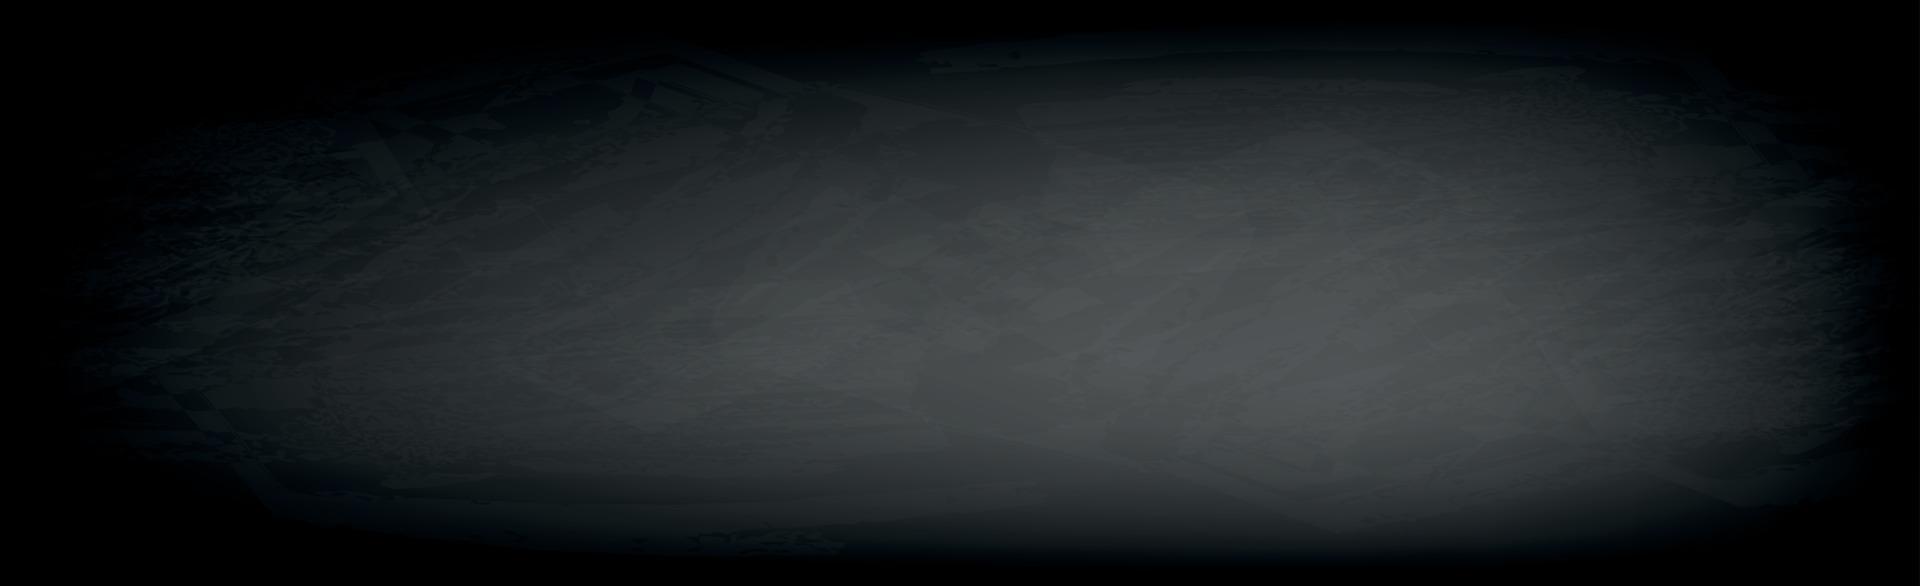 mörk svart texturerad panoramabakgrund vektor